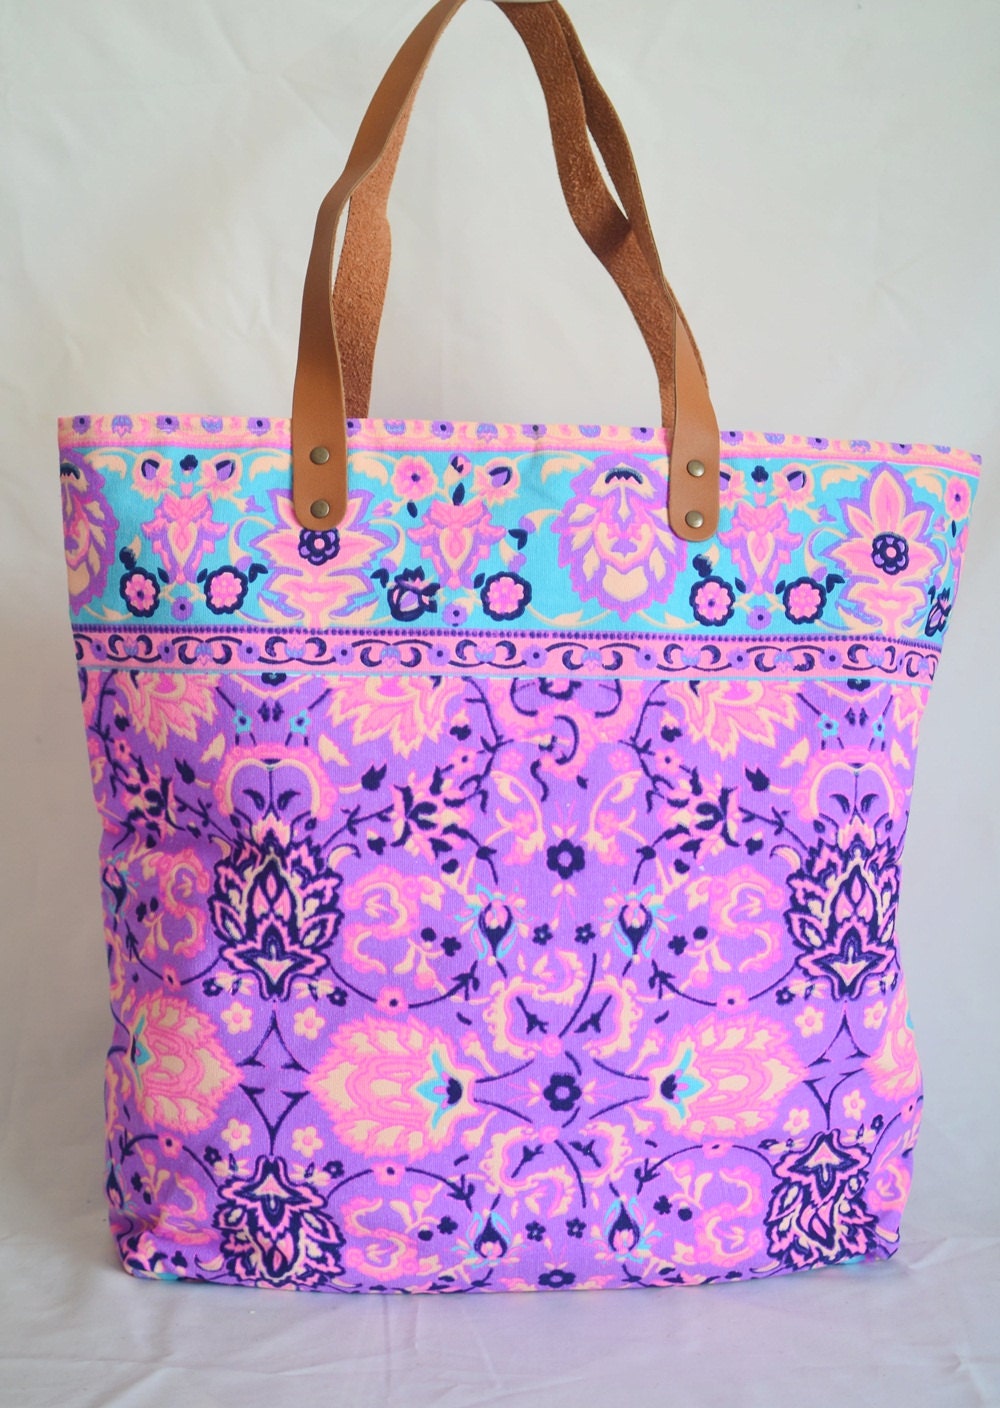 Violet Tote Bag / Summer Tote / Beach bag / Bohemian Bag